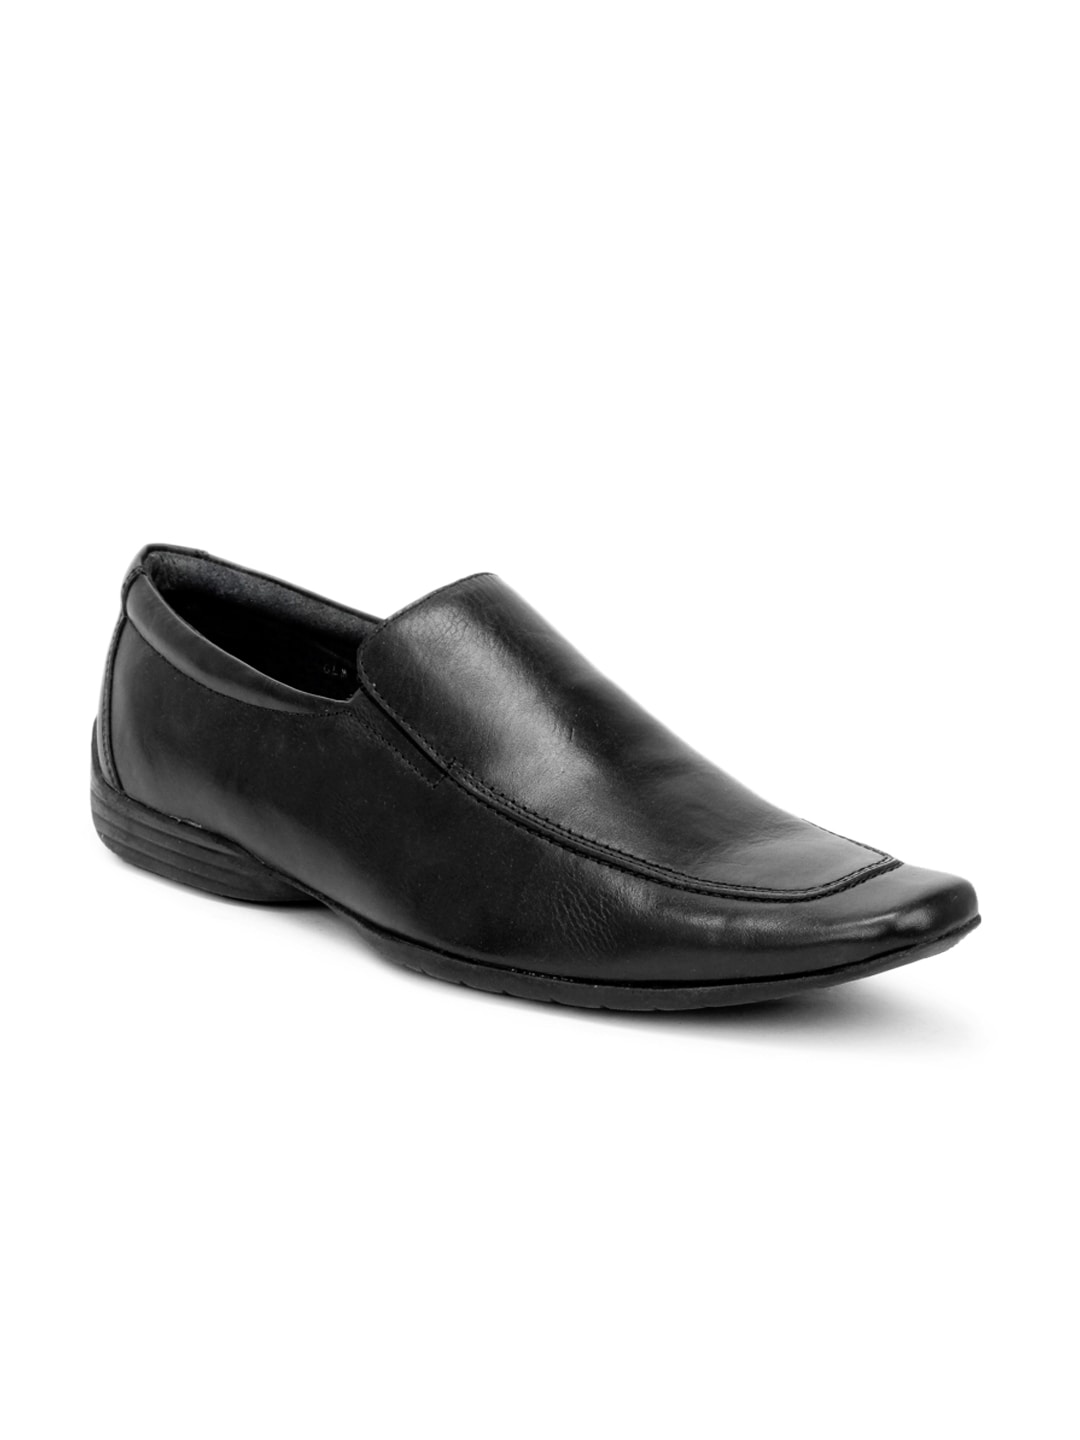 Carlton London Men Black Formal Shoes